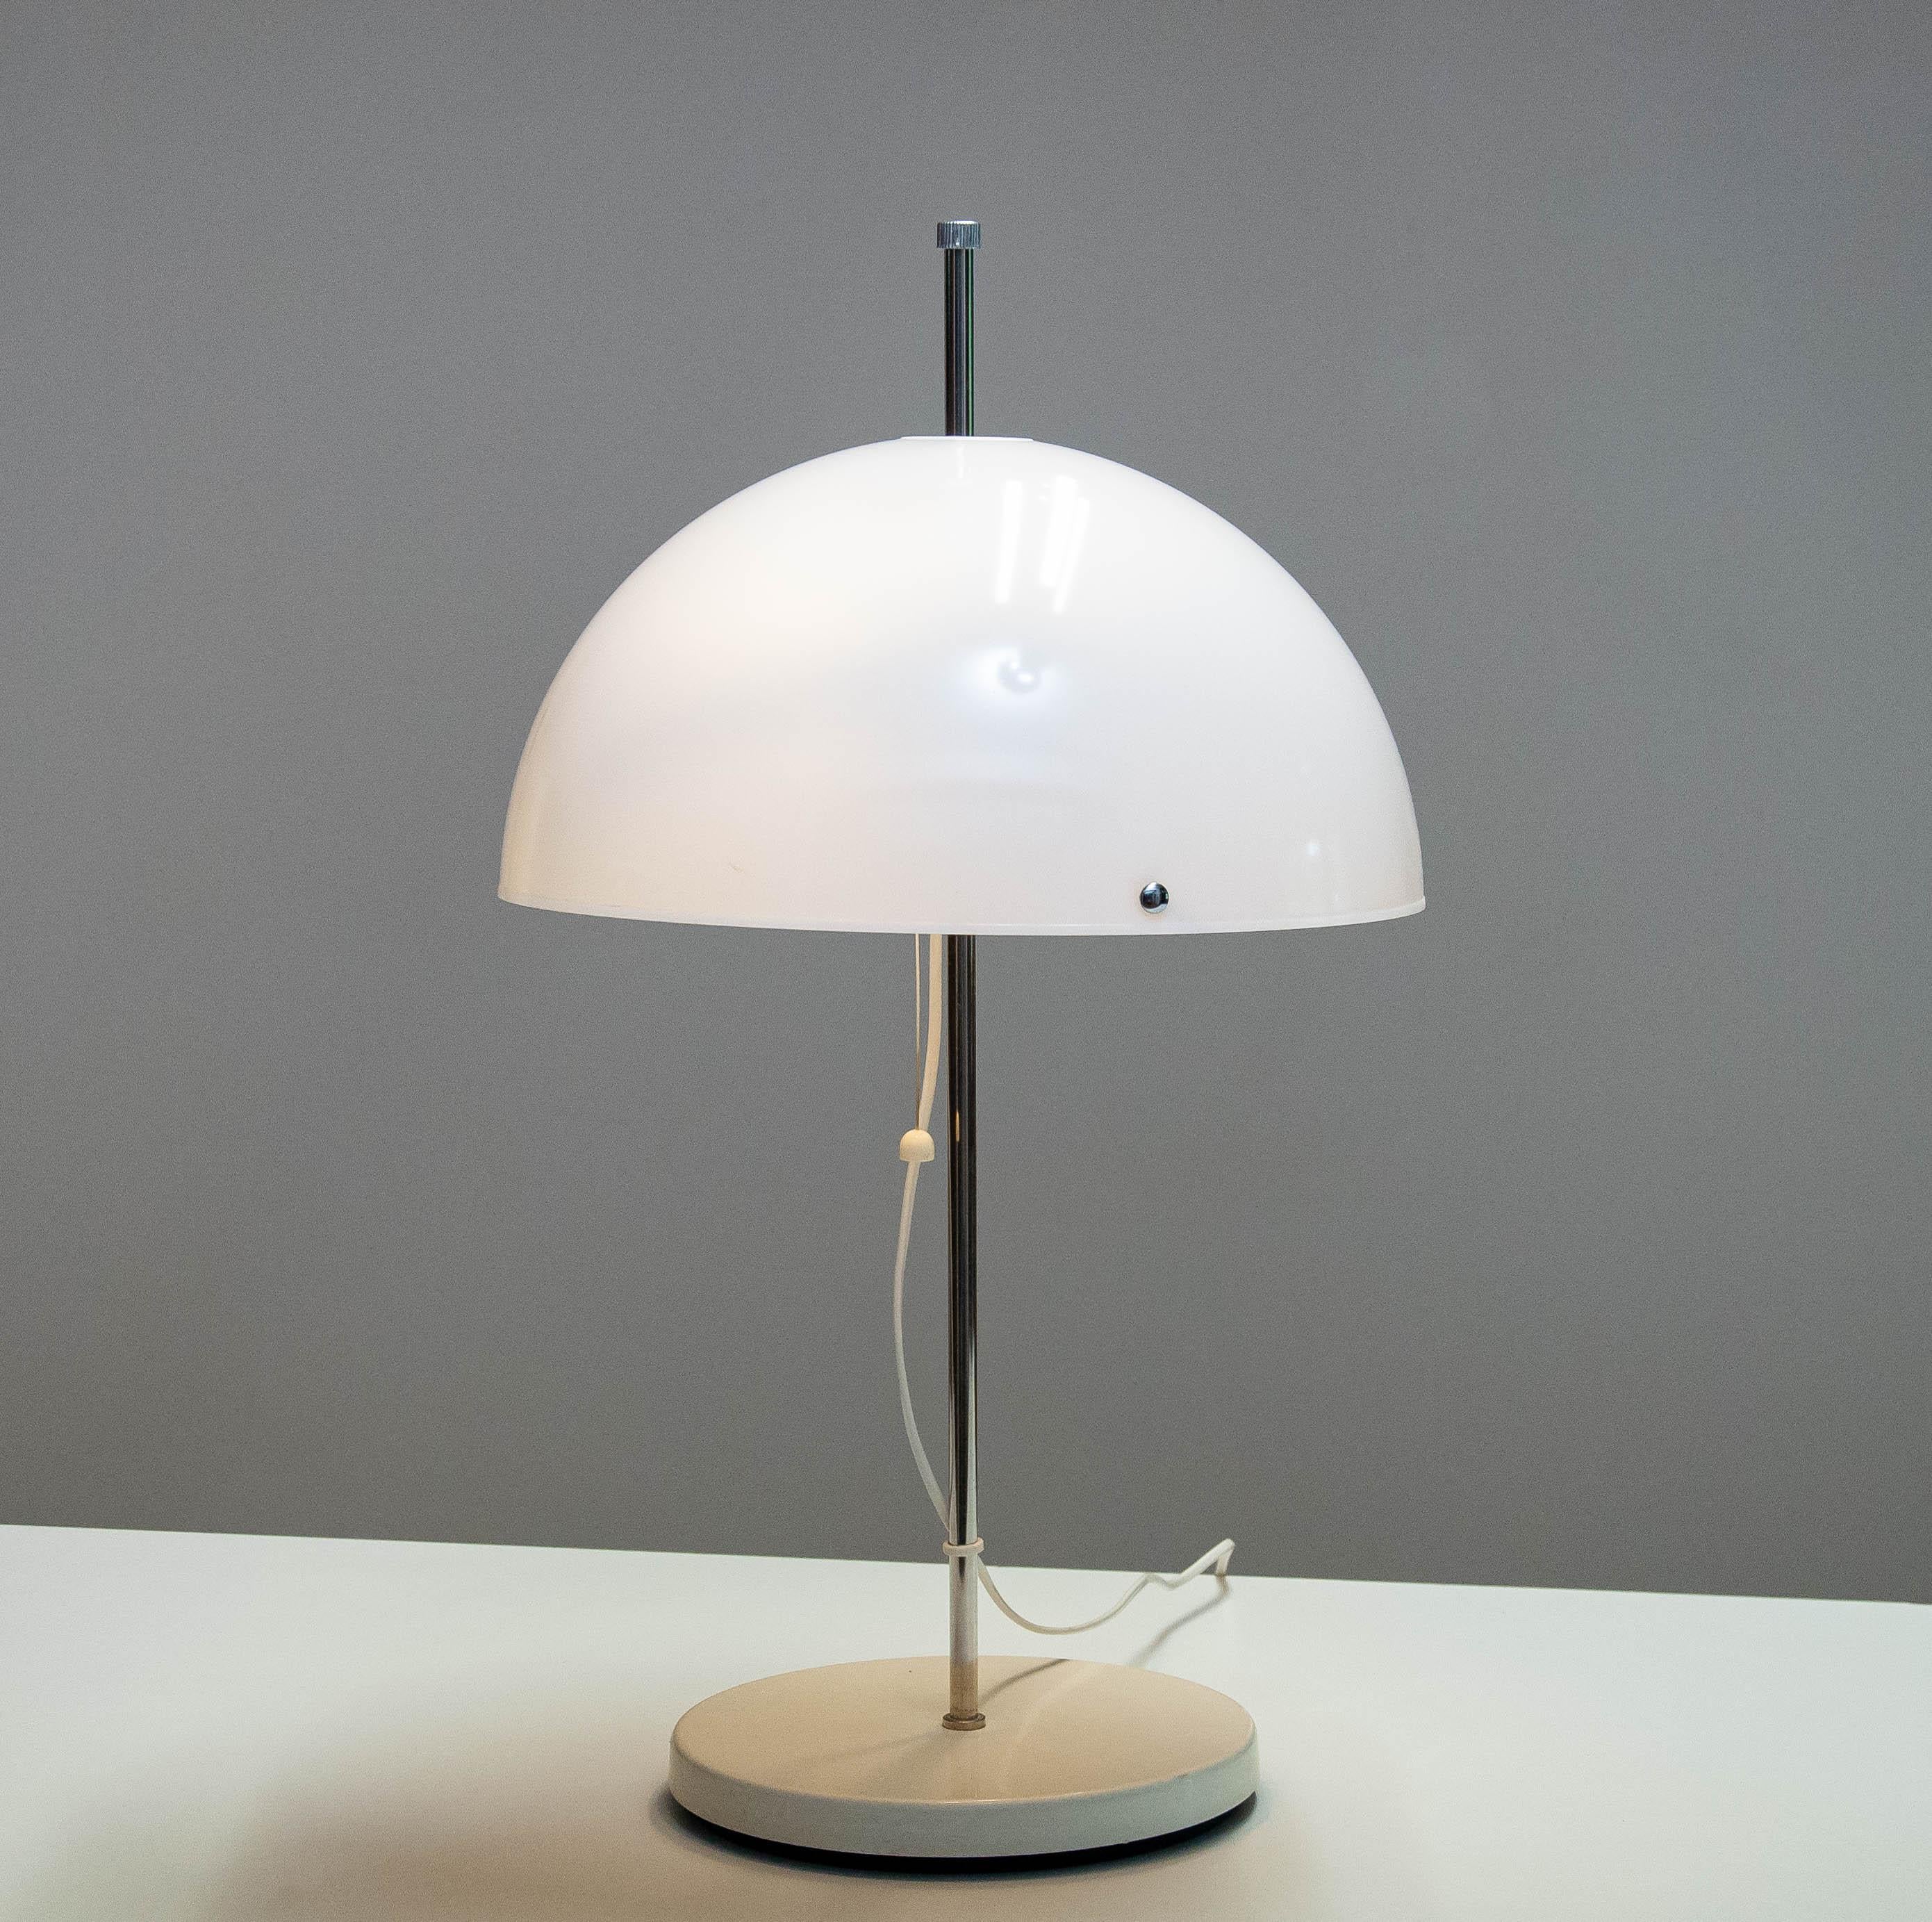 acrylic mushroom lamp